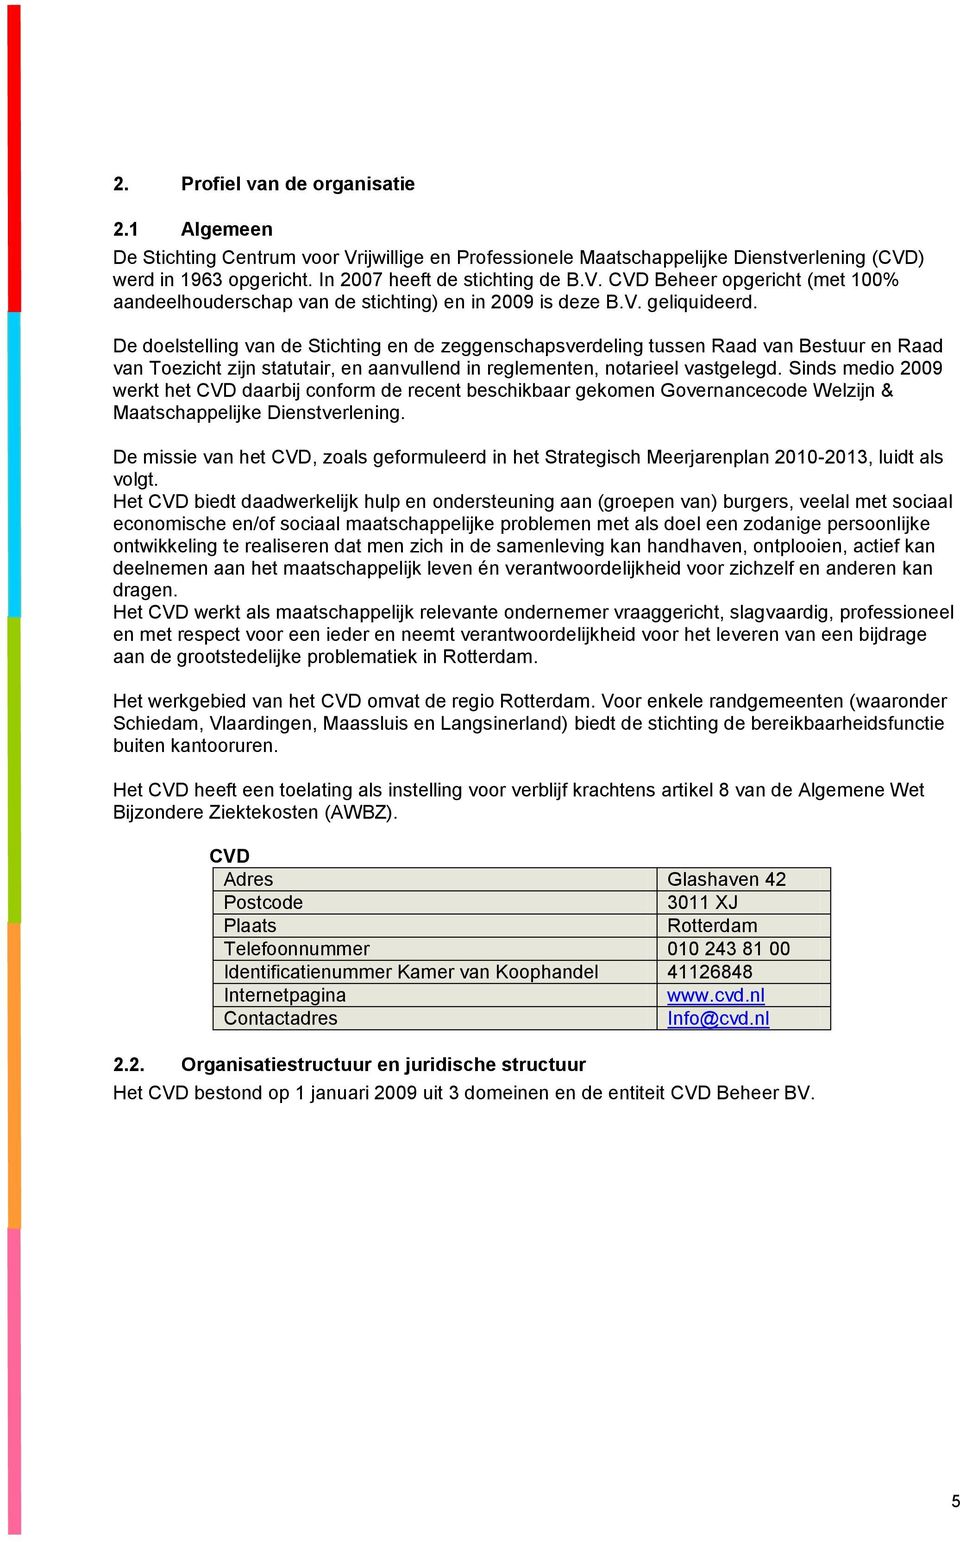 Sinds medio 2009 werkt het CVD daarbij conform de recent beschikbaar gekomen Governancecode Welzijn & Maatschappelijke Dienstverlening.